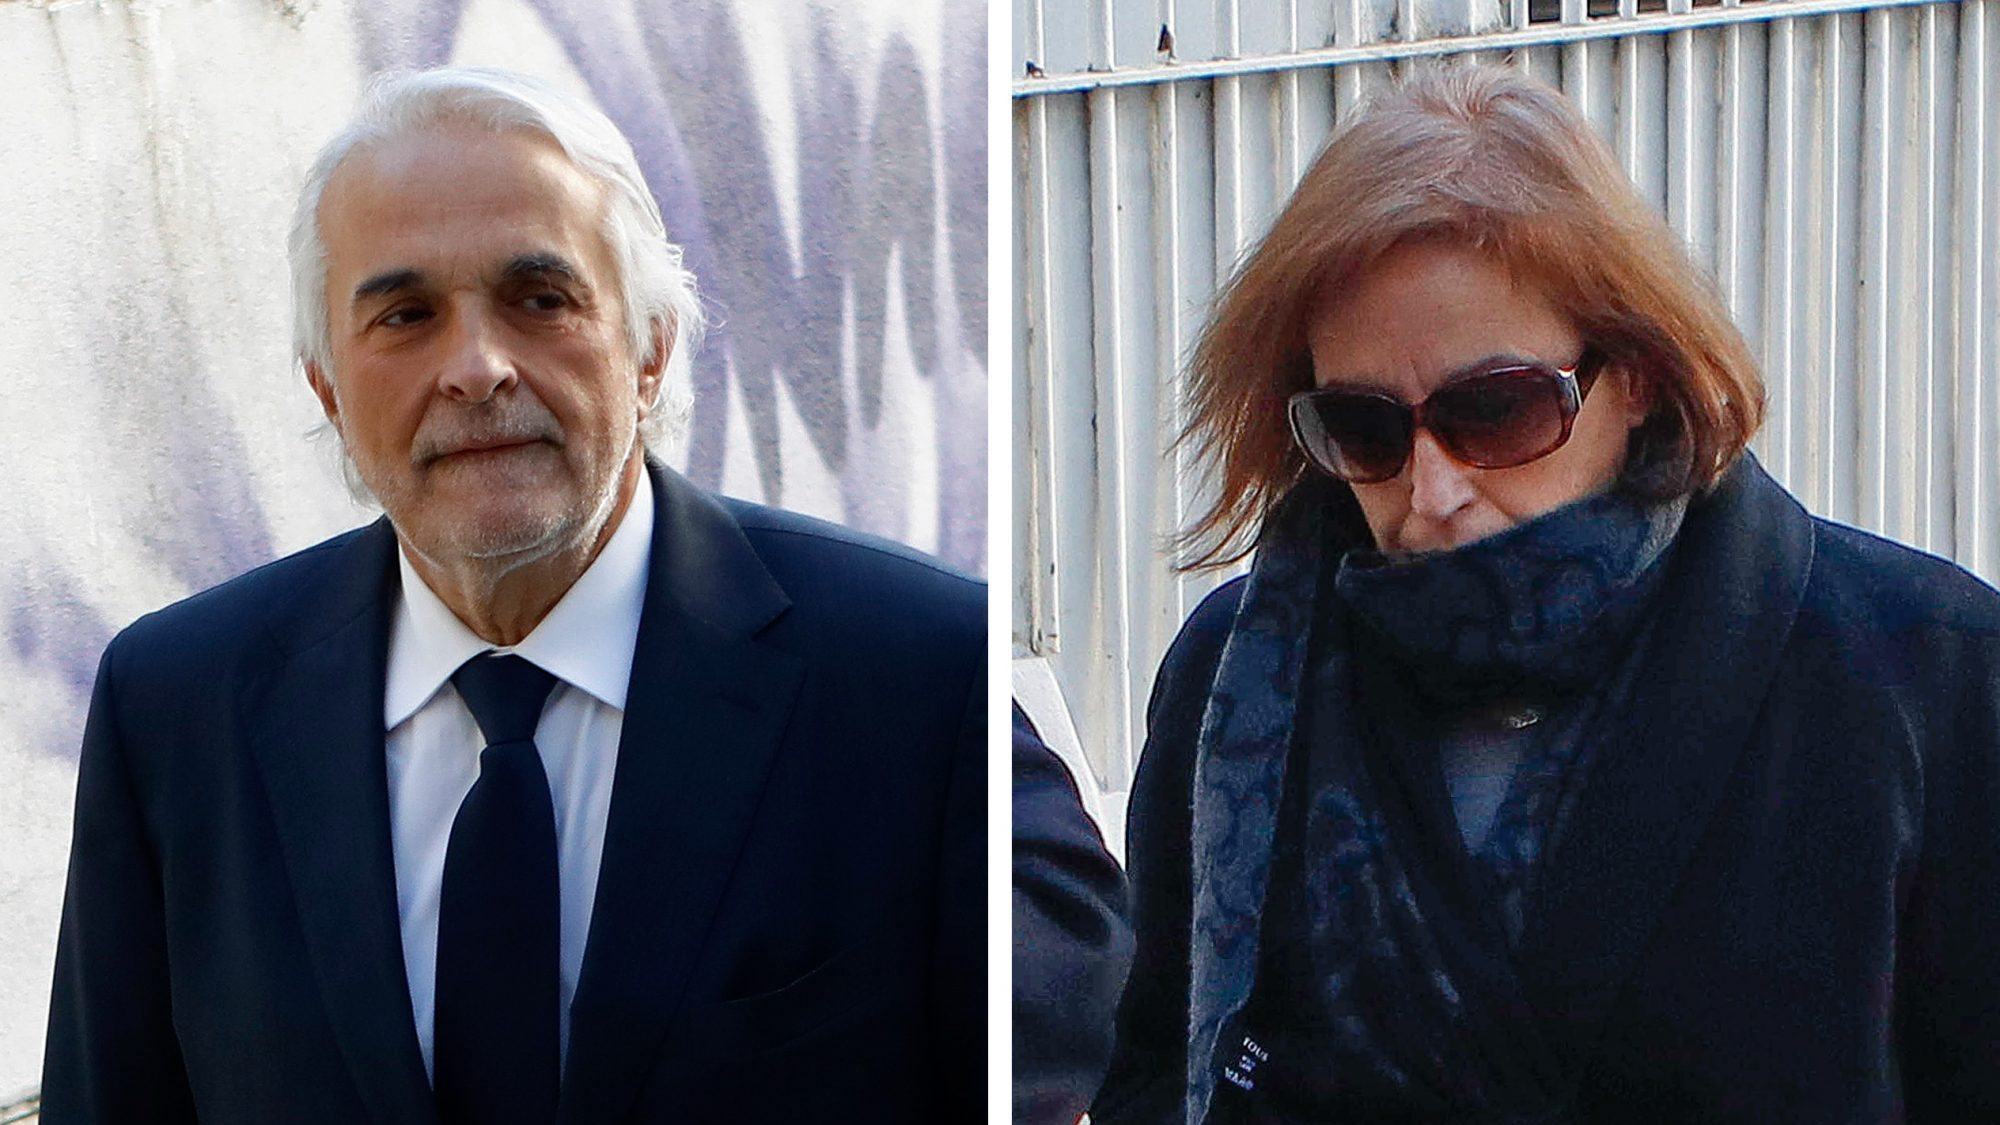 Rui Rangel e Fátima Galante estão acusados na Operação Lex de corrupção, abuso de poder, usurpação de funções, fraude fiscal e branqueamento